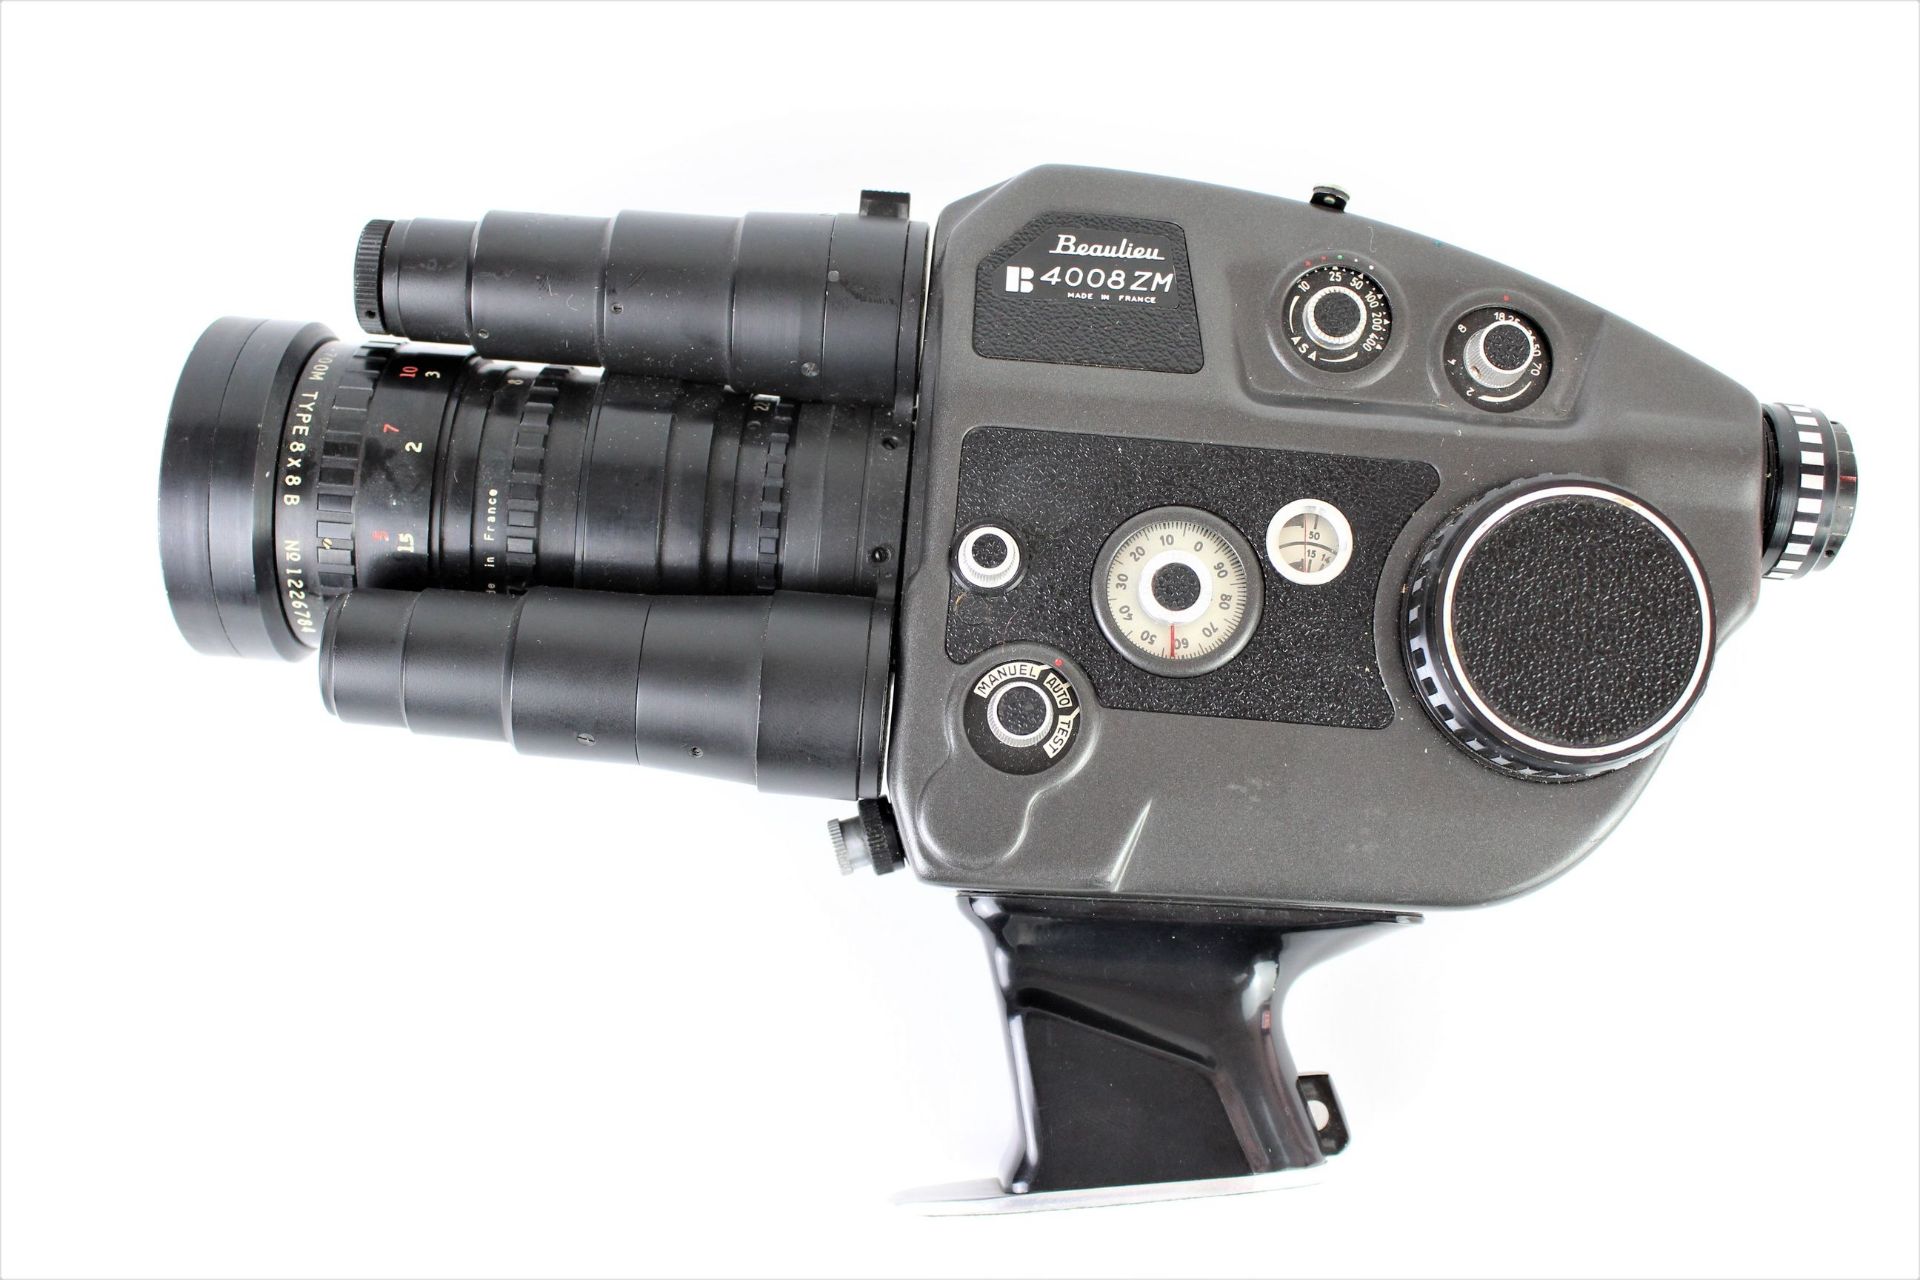 Beualieu Filmkamera " B 4008 ZM "